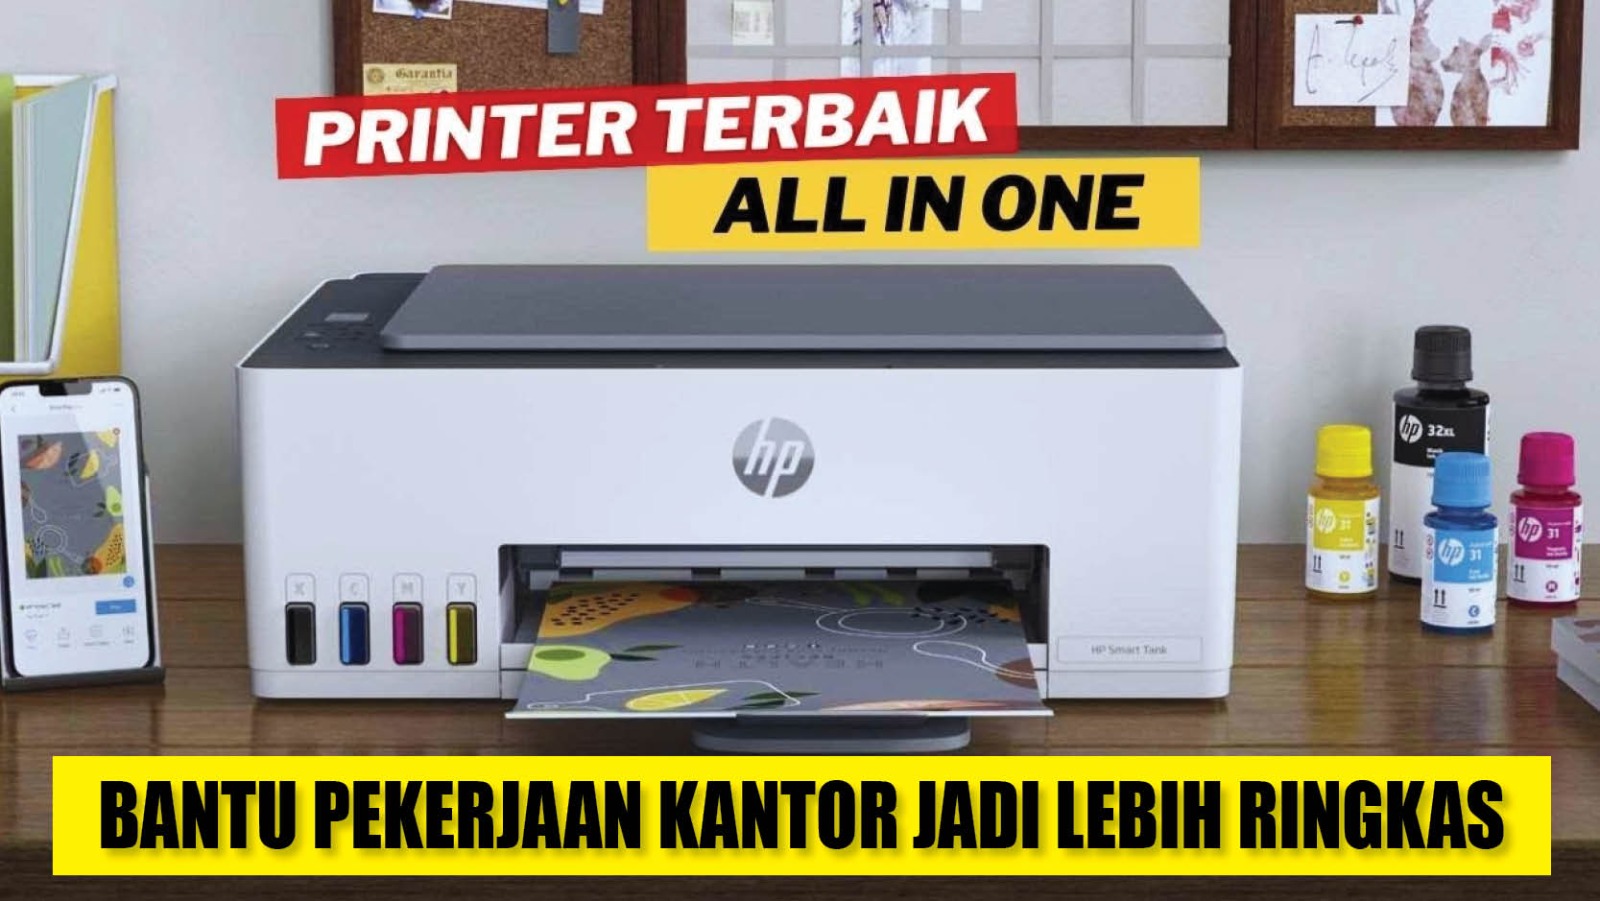 5 Rekomendasi Printer All in One, Bantu Pekerjaan Kantor Jadi Lebih Ringkas